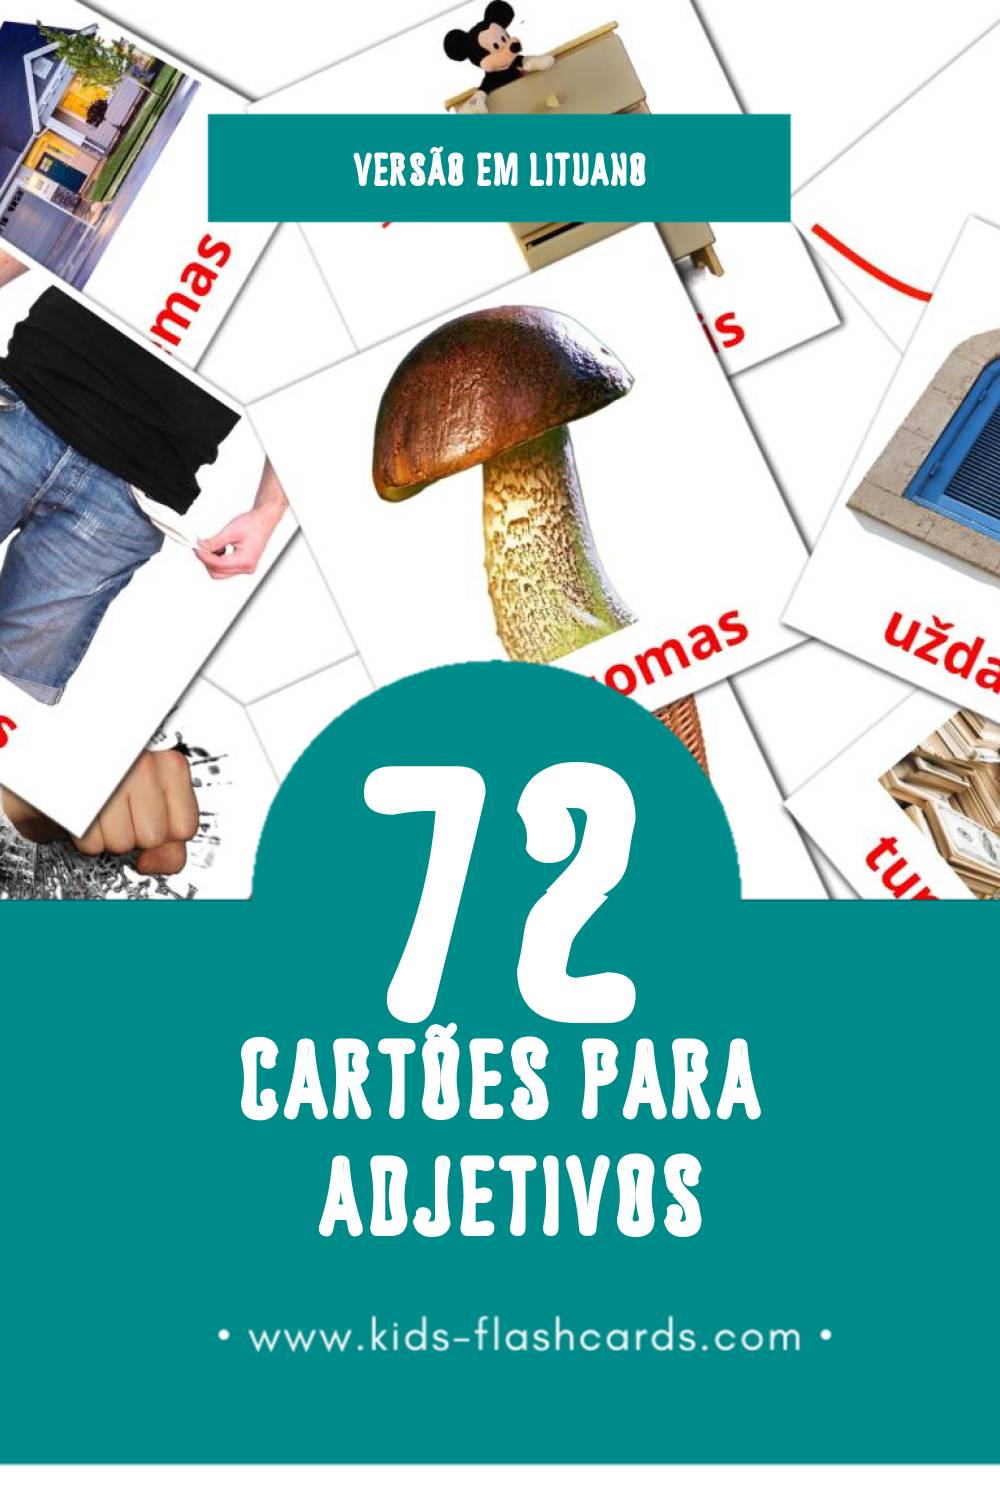 Flashcards de būdvardžiai Visuais para Toddlers (72 cartões em Lituano)